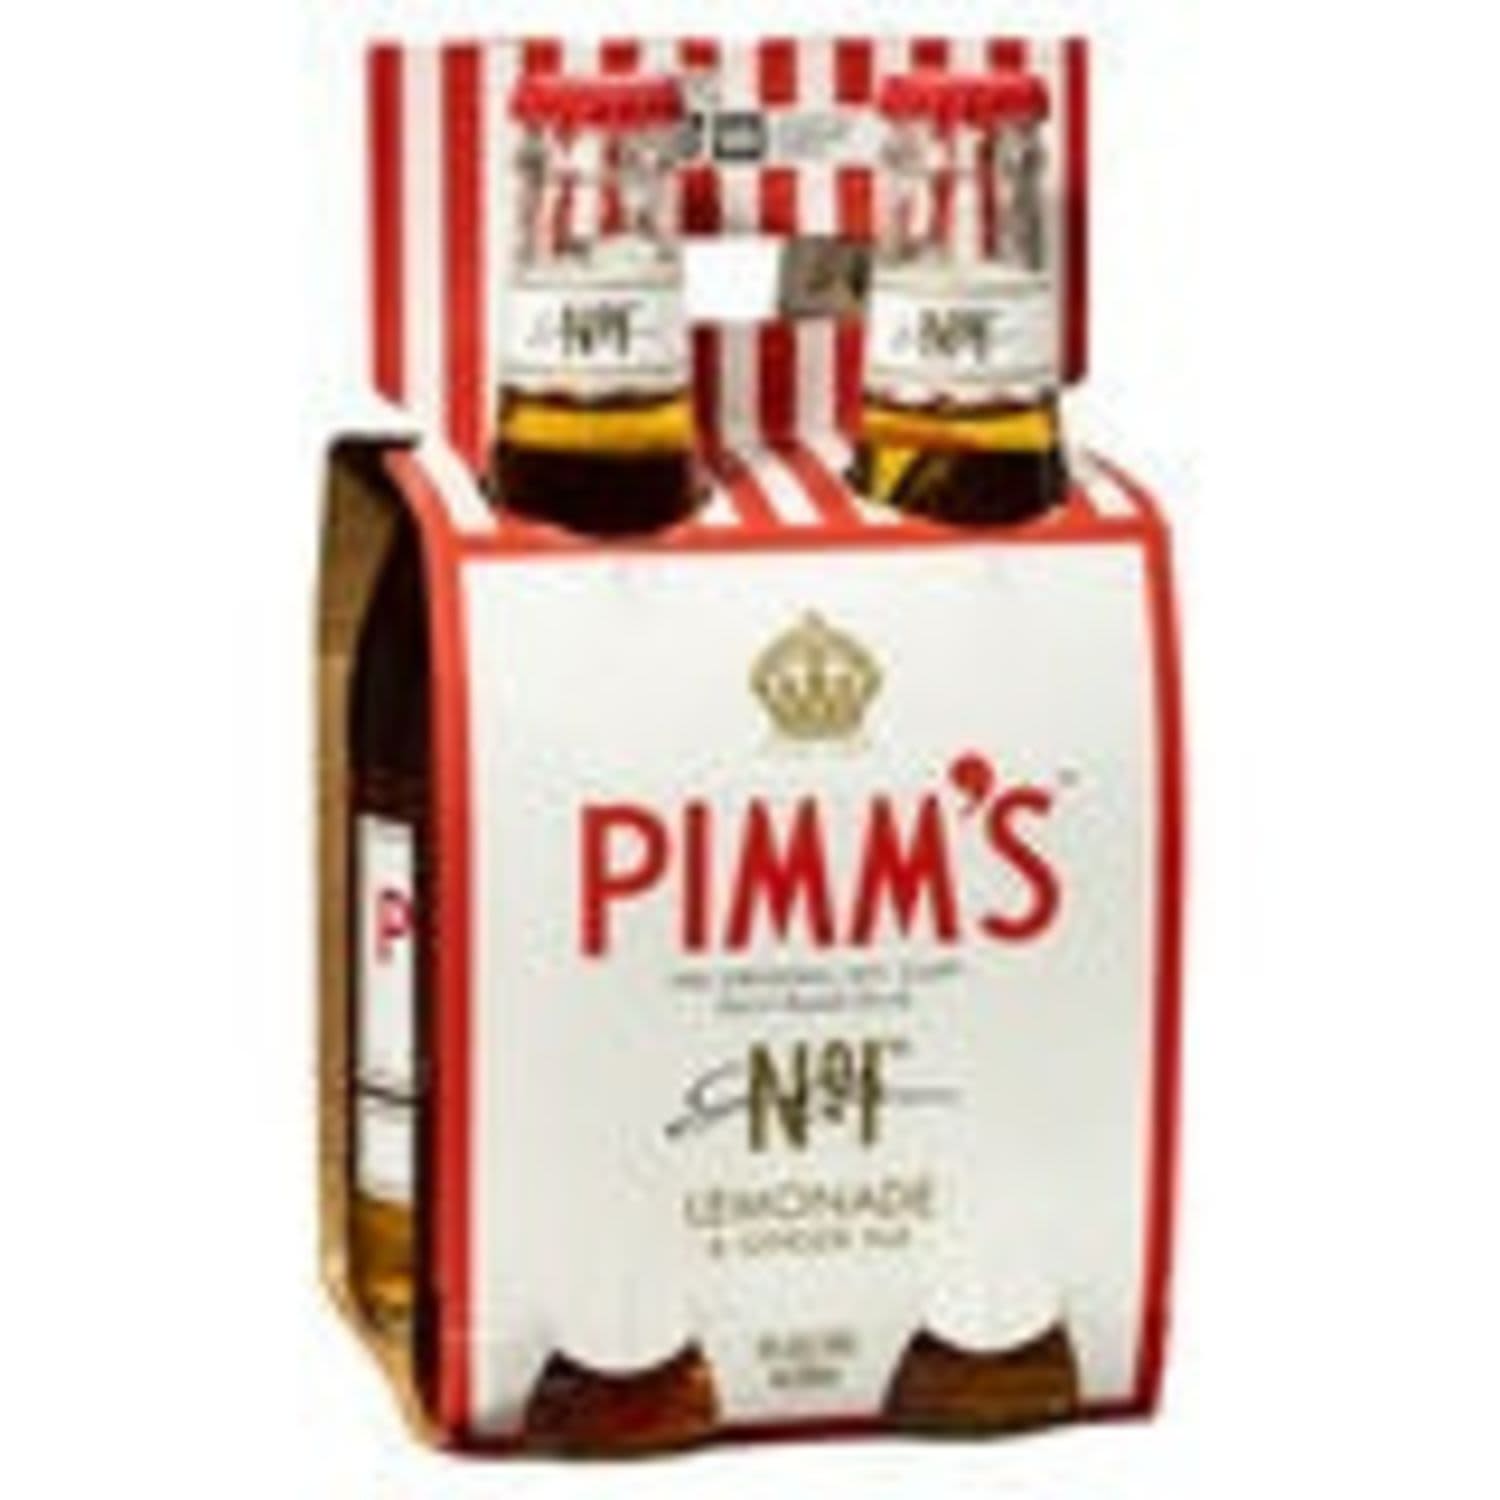 Pimm's No 1 Cup Lemonade and Ginger Ale 330mL<br /> <br />Alcohol Volume: 4.00%<br /><br />Pack Format: 4 Pack<br /><br />Standard Drinks: 1<br /><br />Pack Type: Bottle<br />